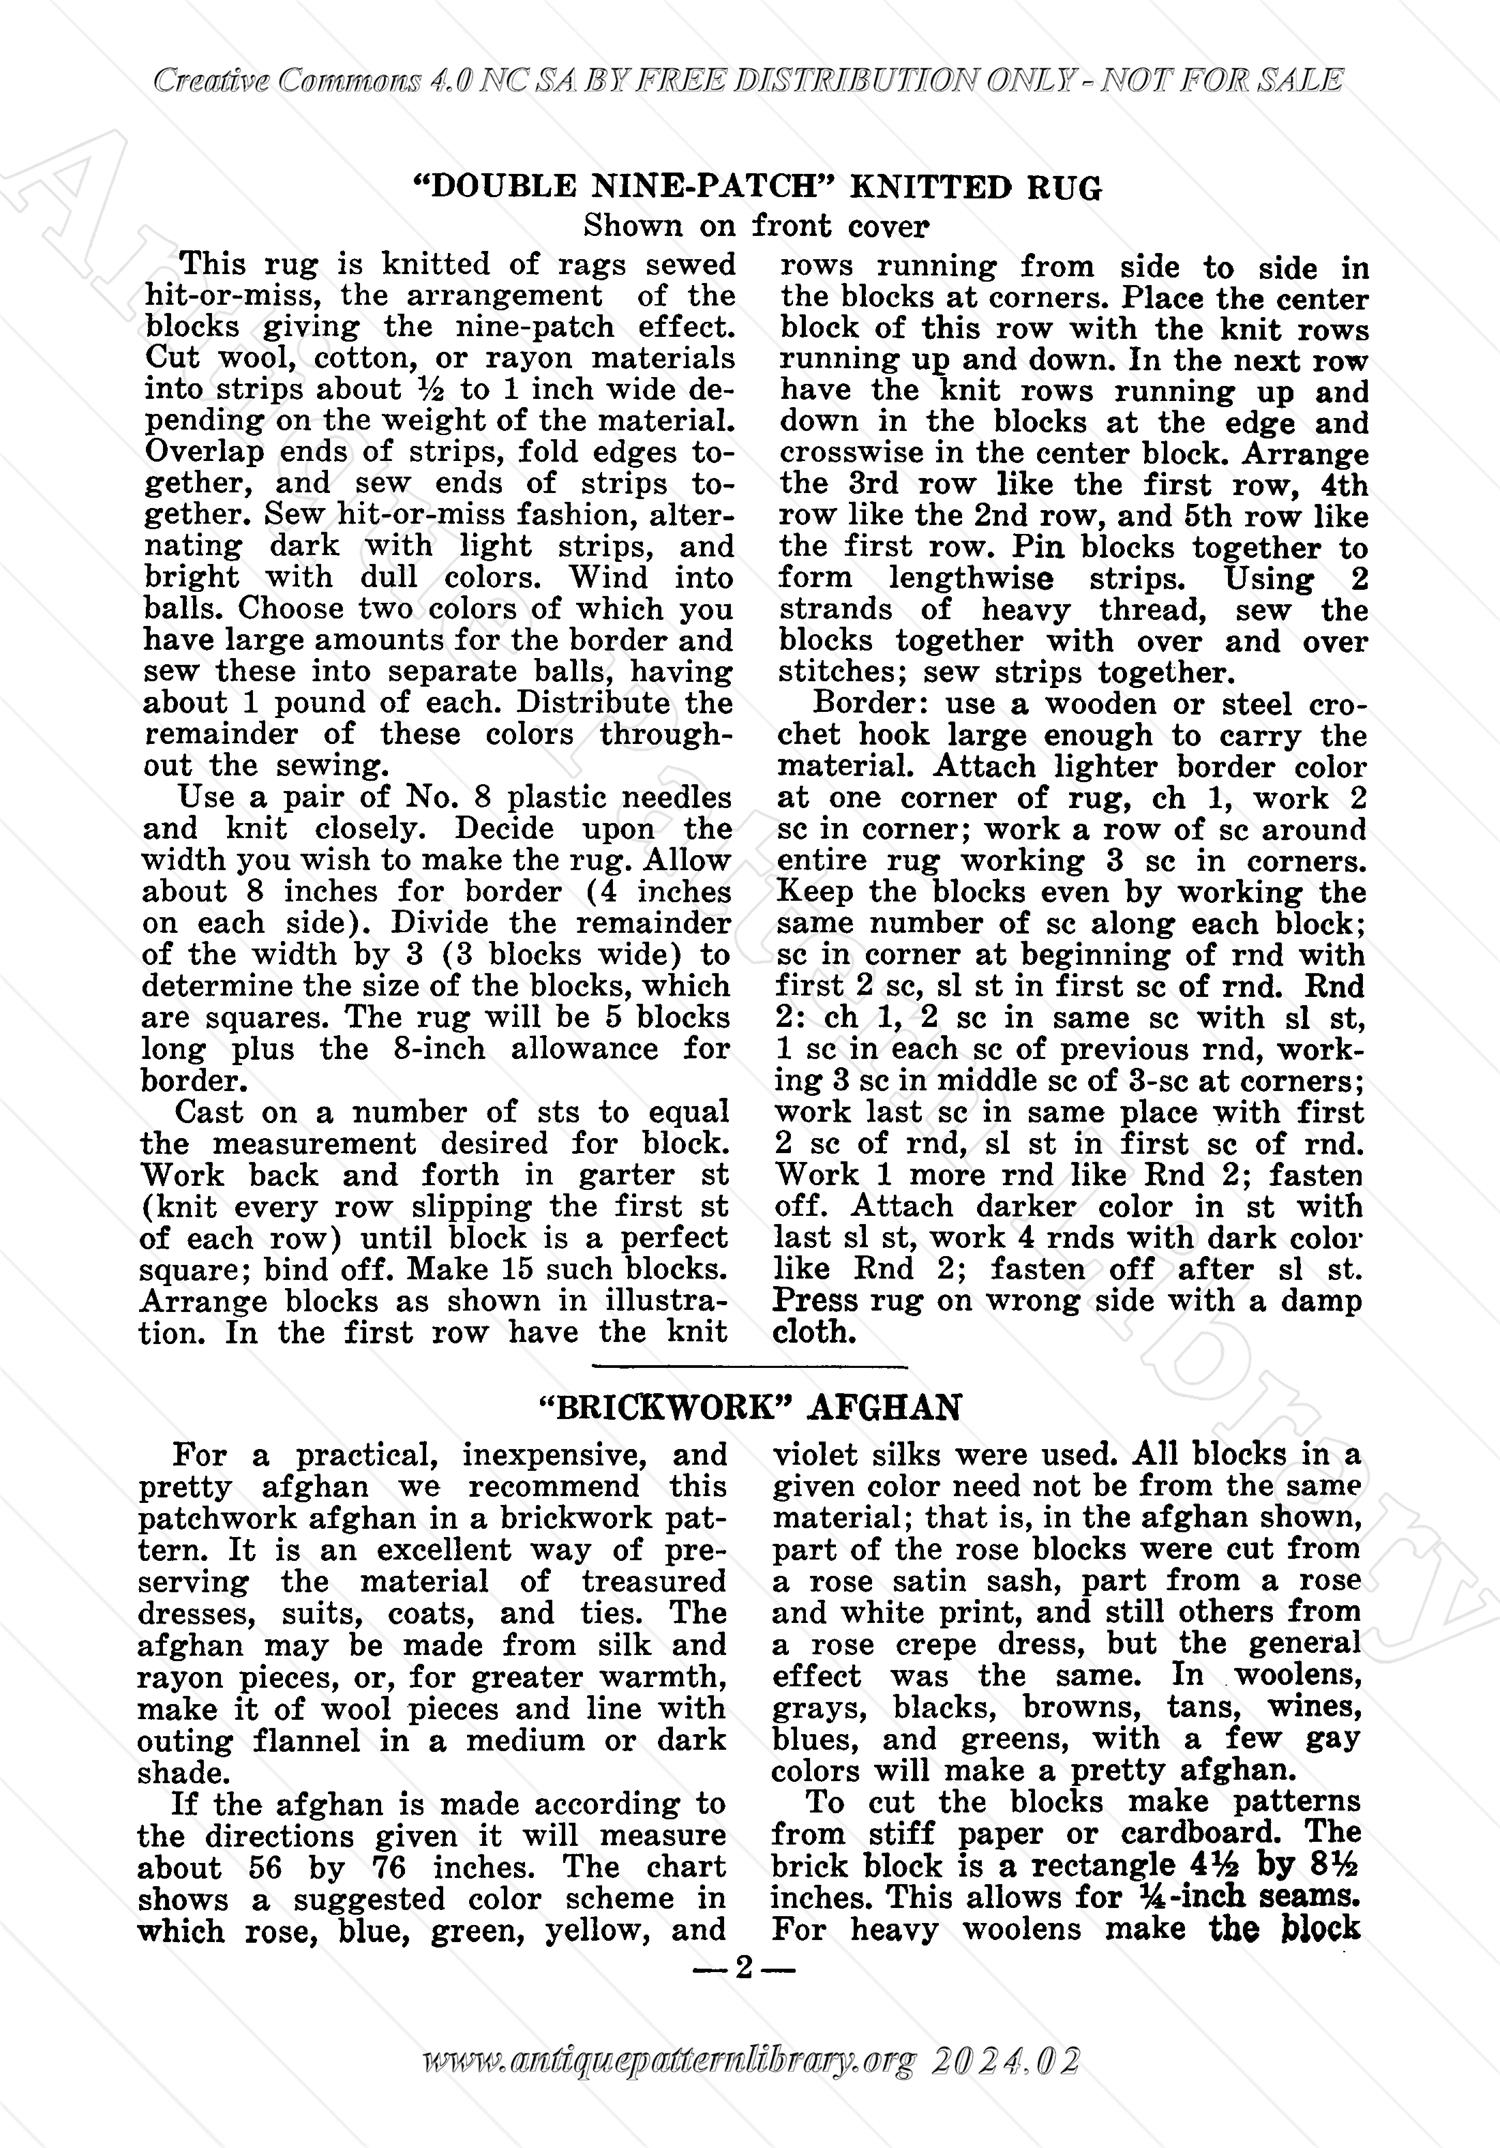 I-WB122 The Workbasket Volume 12 Number 2 November 2-934